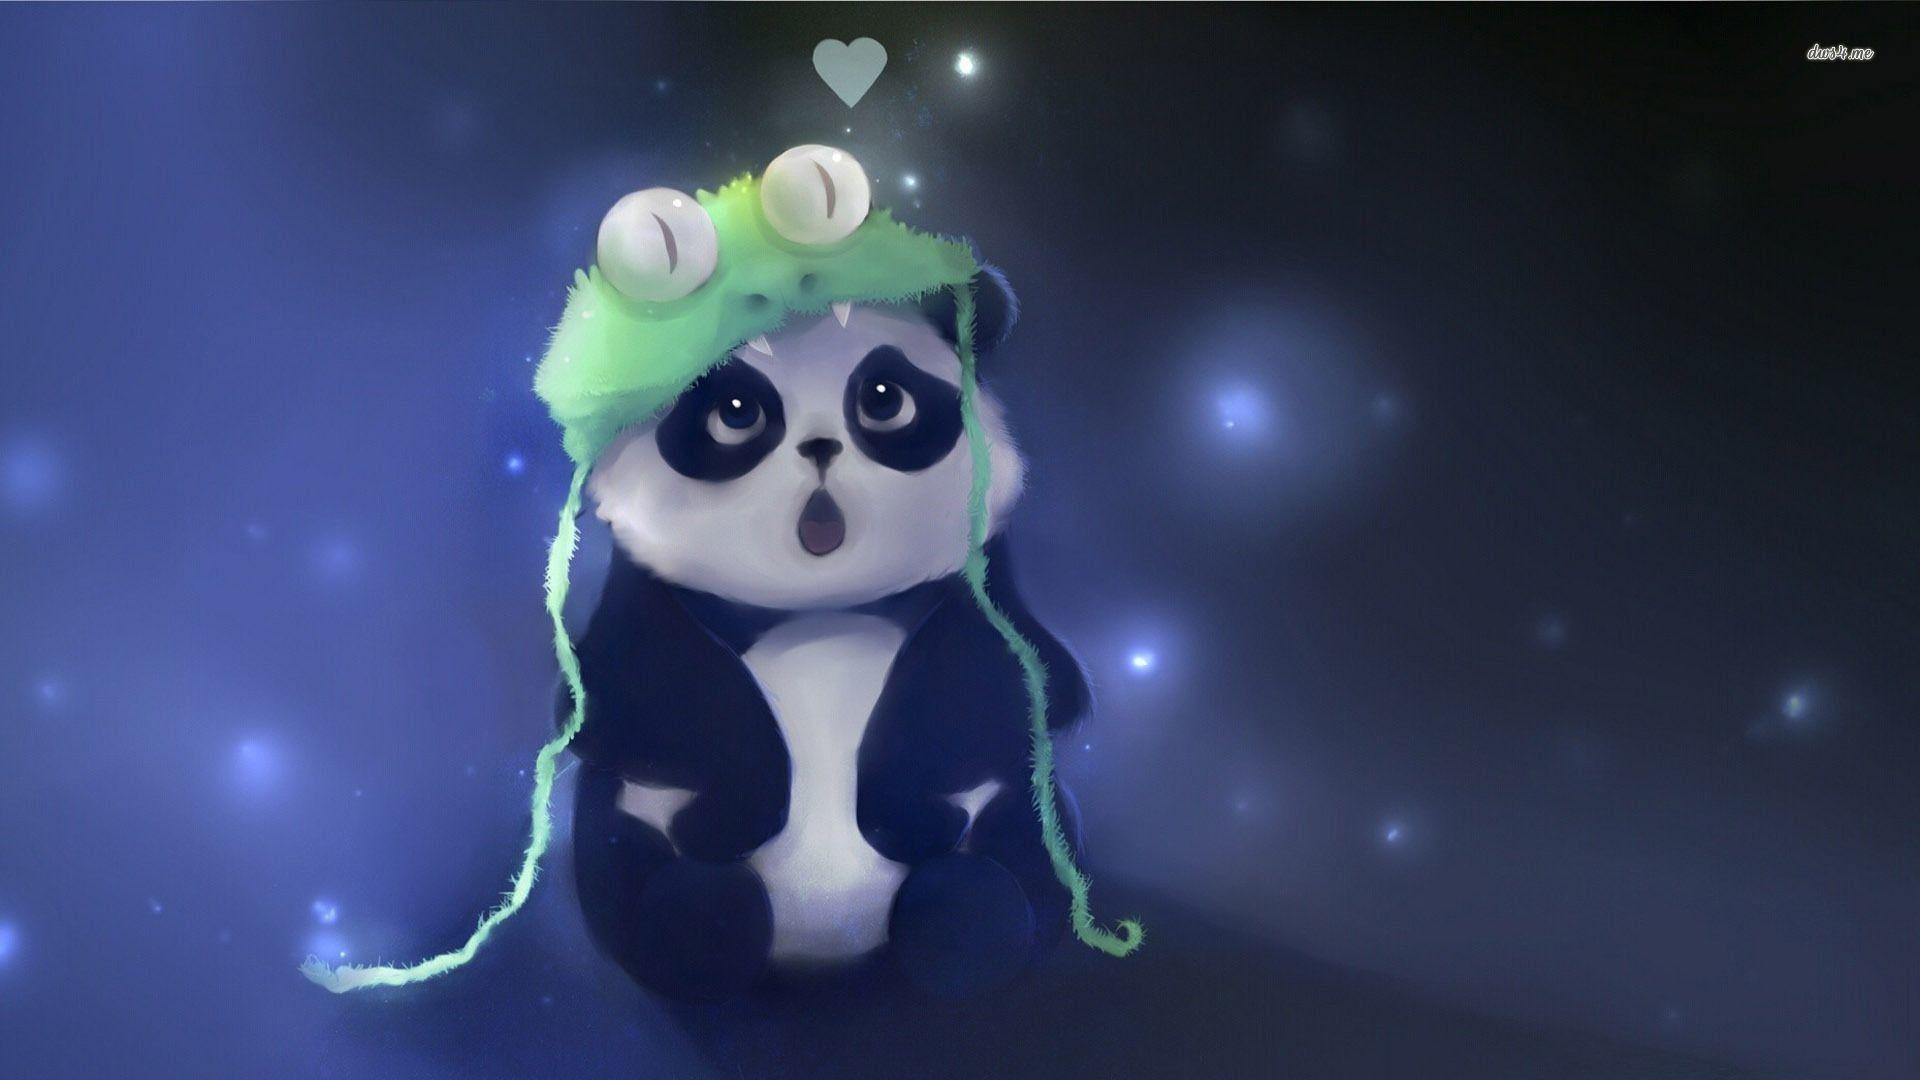 Cute Anime Panda Wallpapers - Top Những Hình Ảnh Đẹp